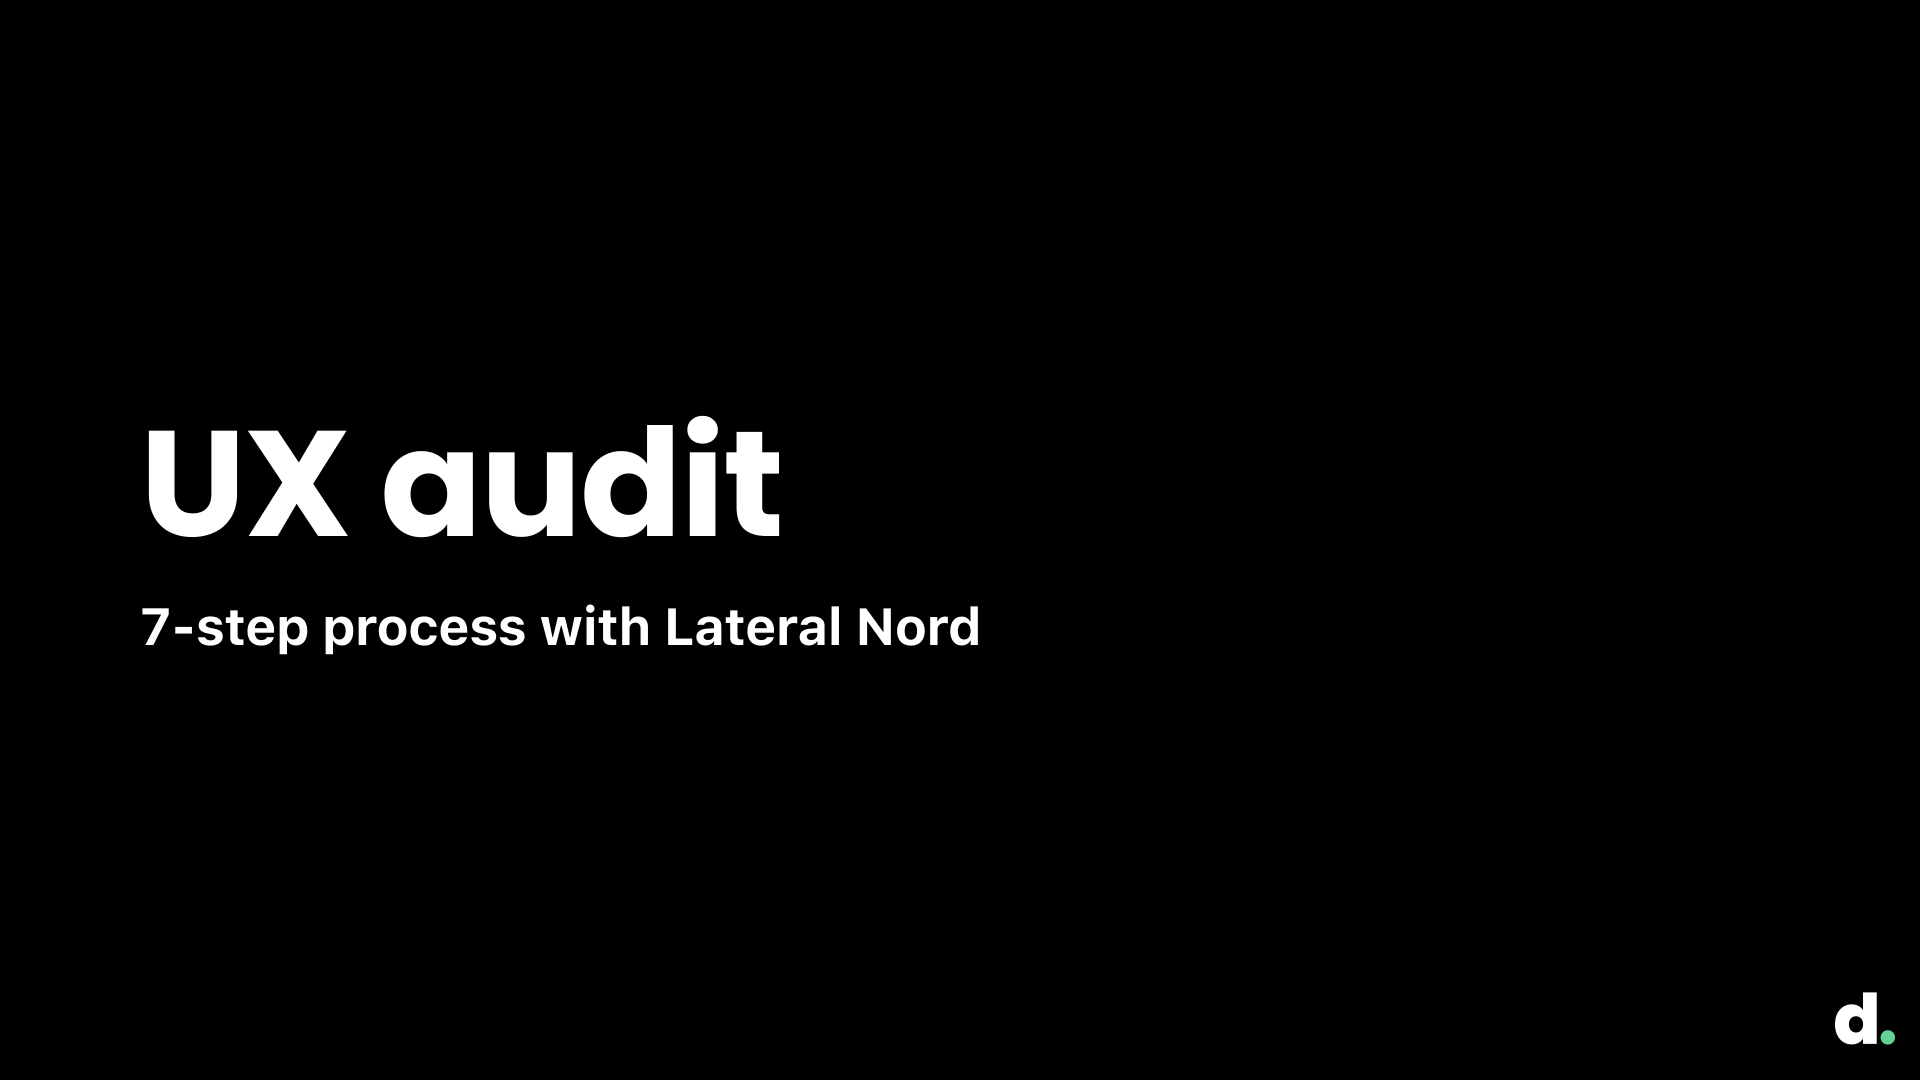 UX audit slide 1